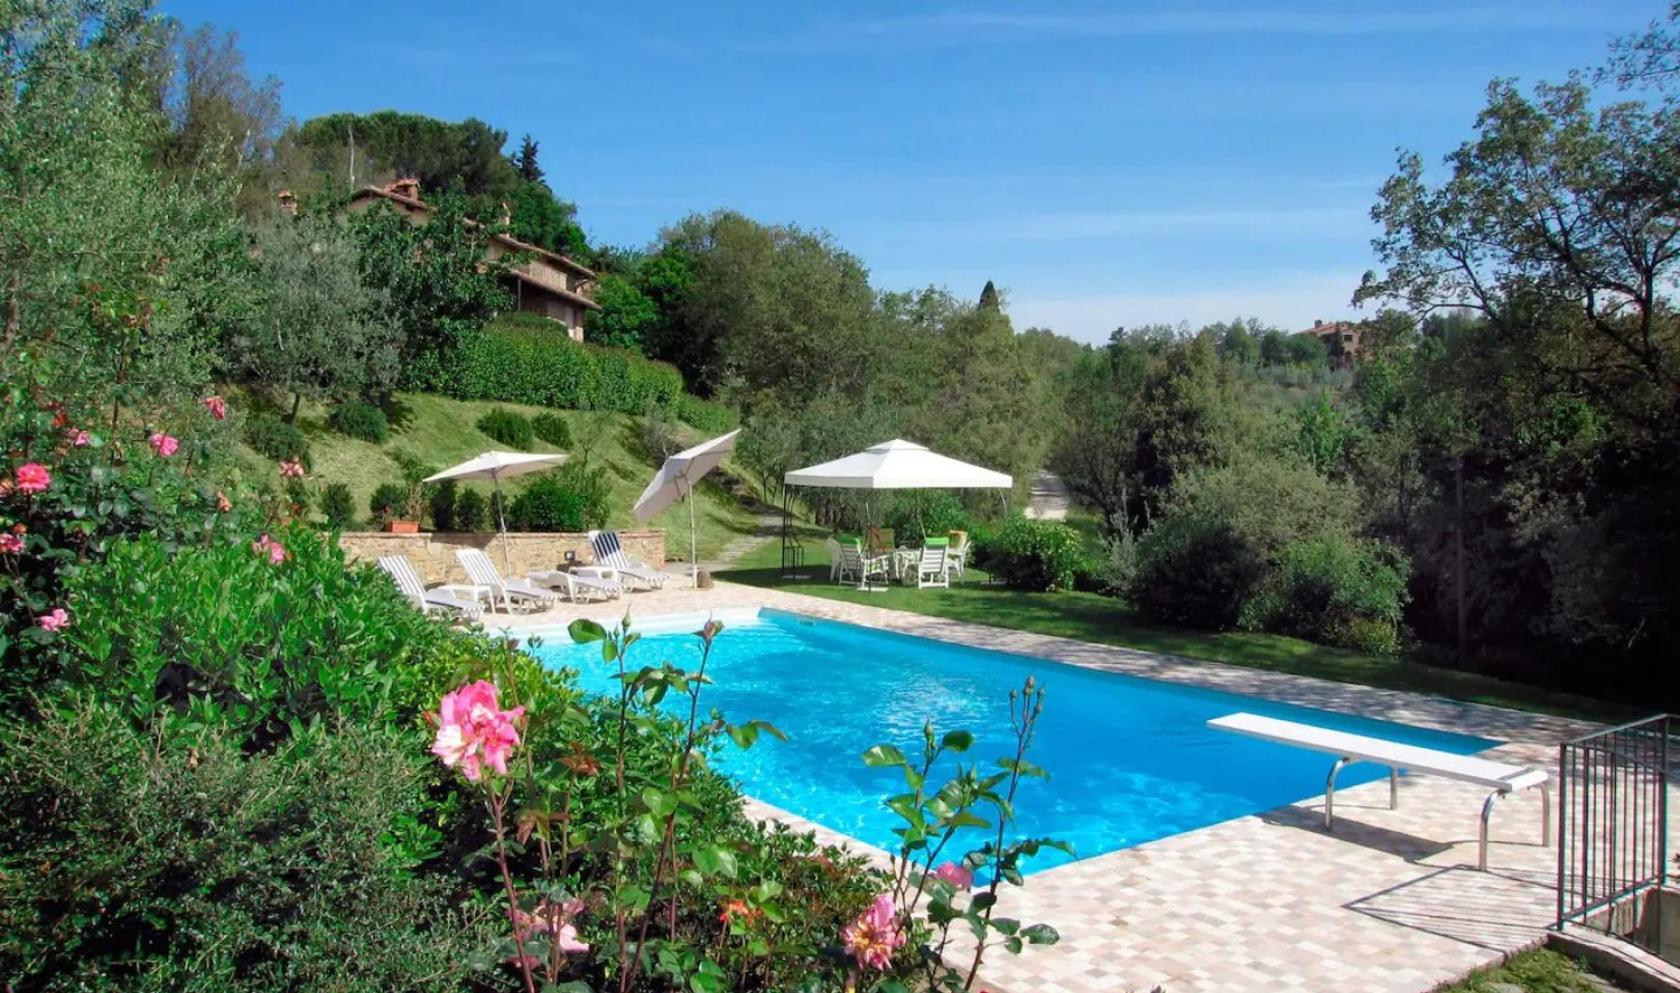 Toscana Immobiliare - La villa si sviluppa su una superficie di 350 mq, dislocati su 3 livelli.